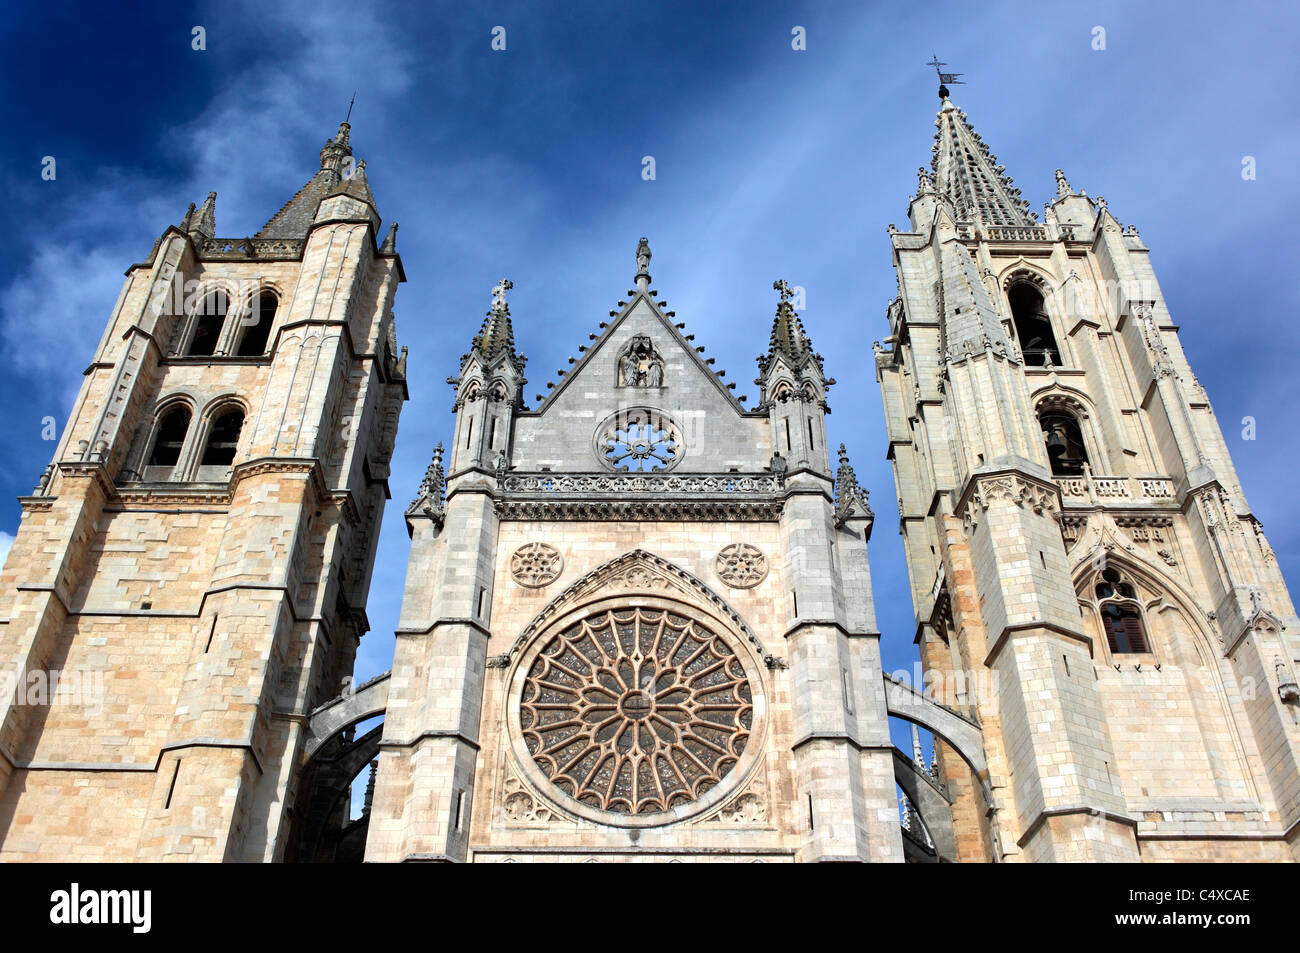 Santa Maria de Leon Cathedral, Leon, Castile and Leon, Spain Stock Photo